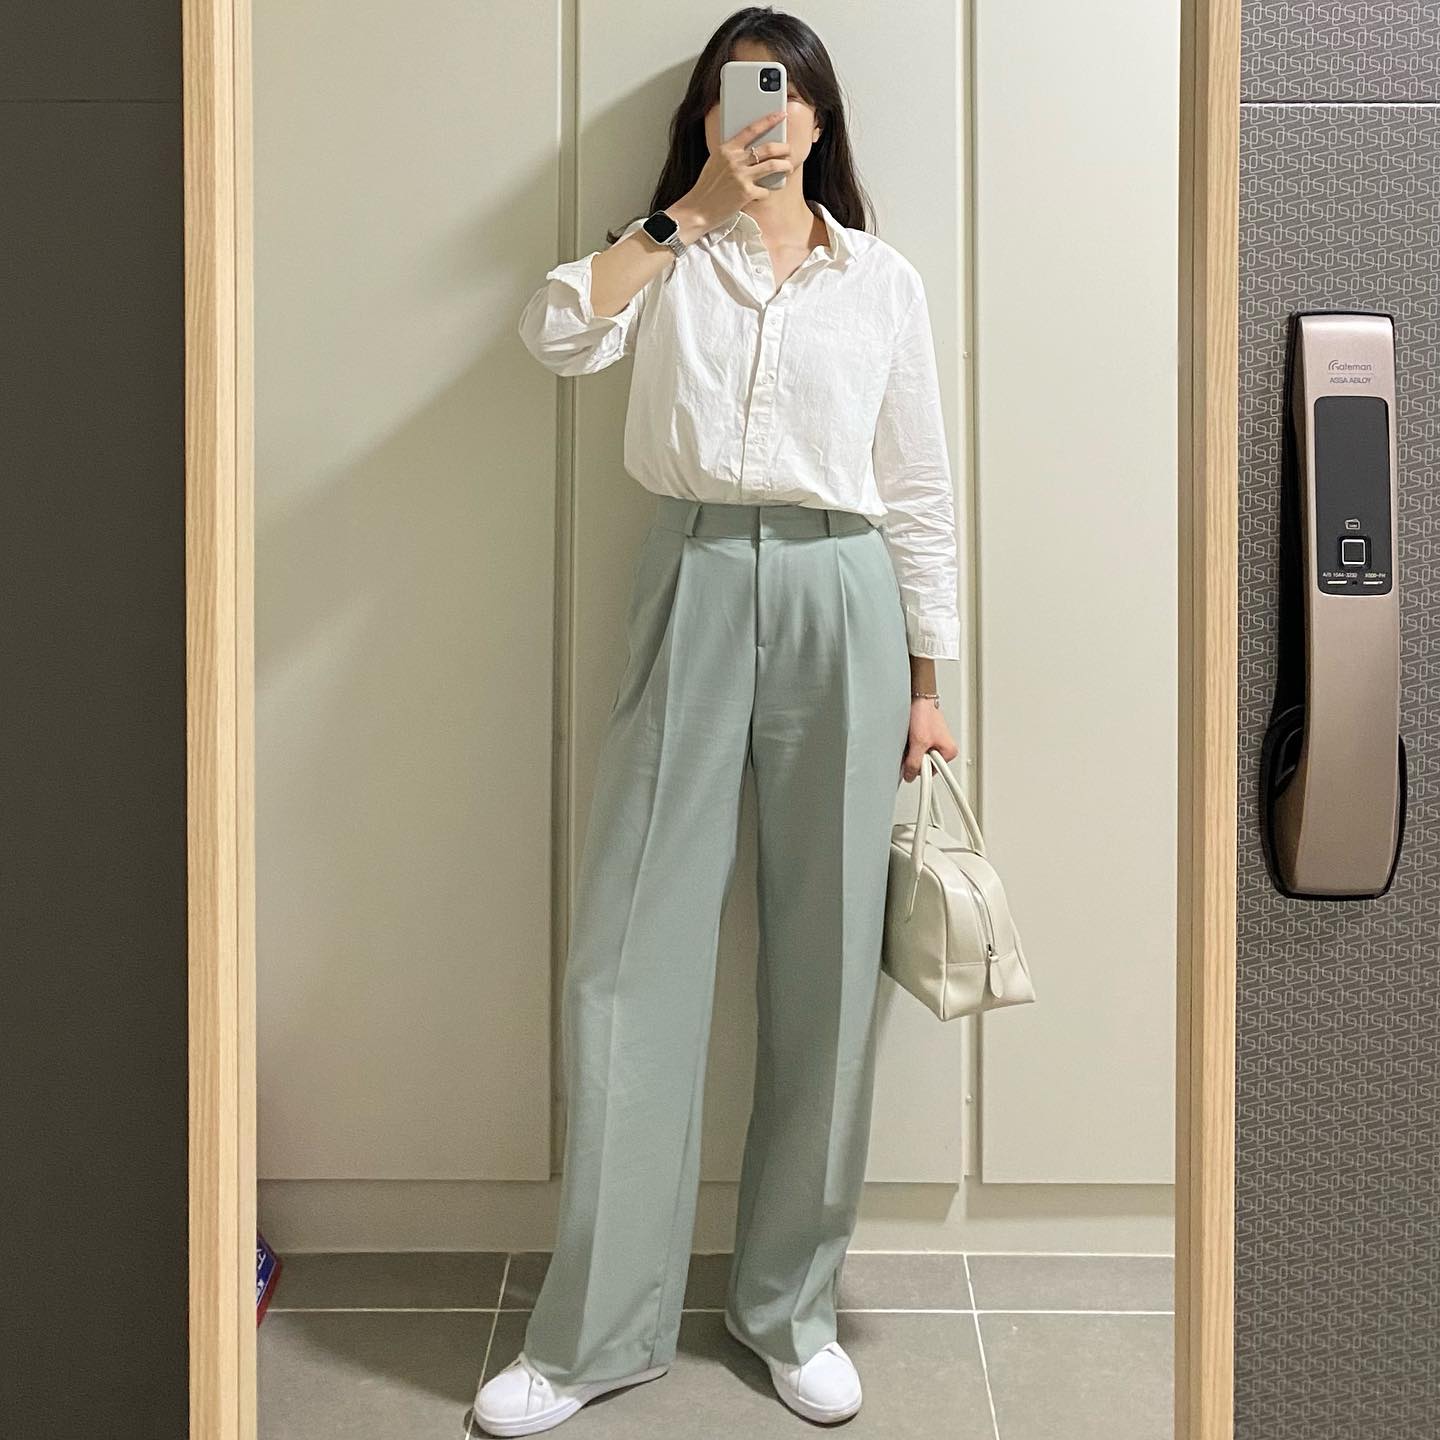 Cách mặc áo sơ mi và quần âu: Quý cô Hàn Quốc chuyên diện áo sơ mi + quần  âu theo style tối giản